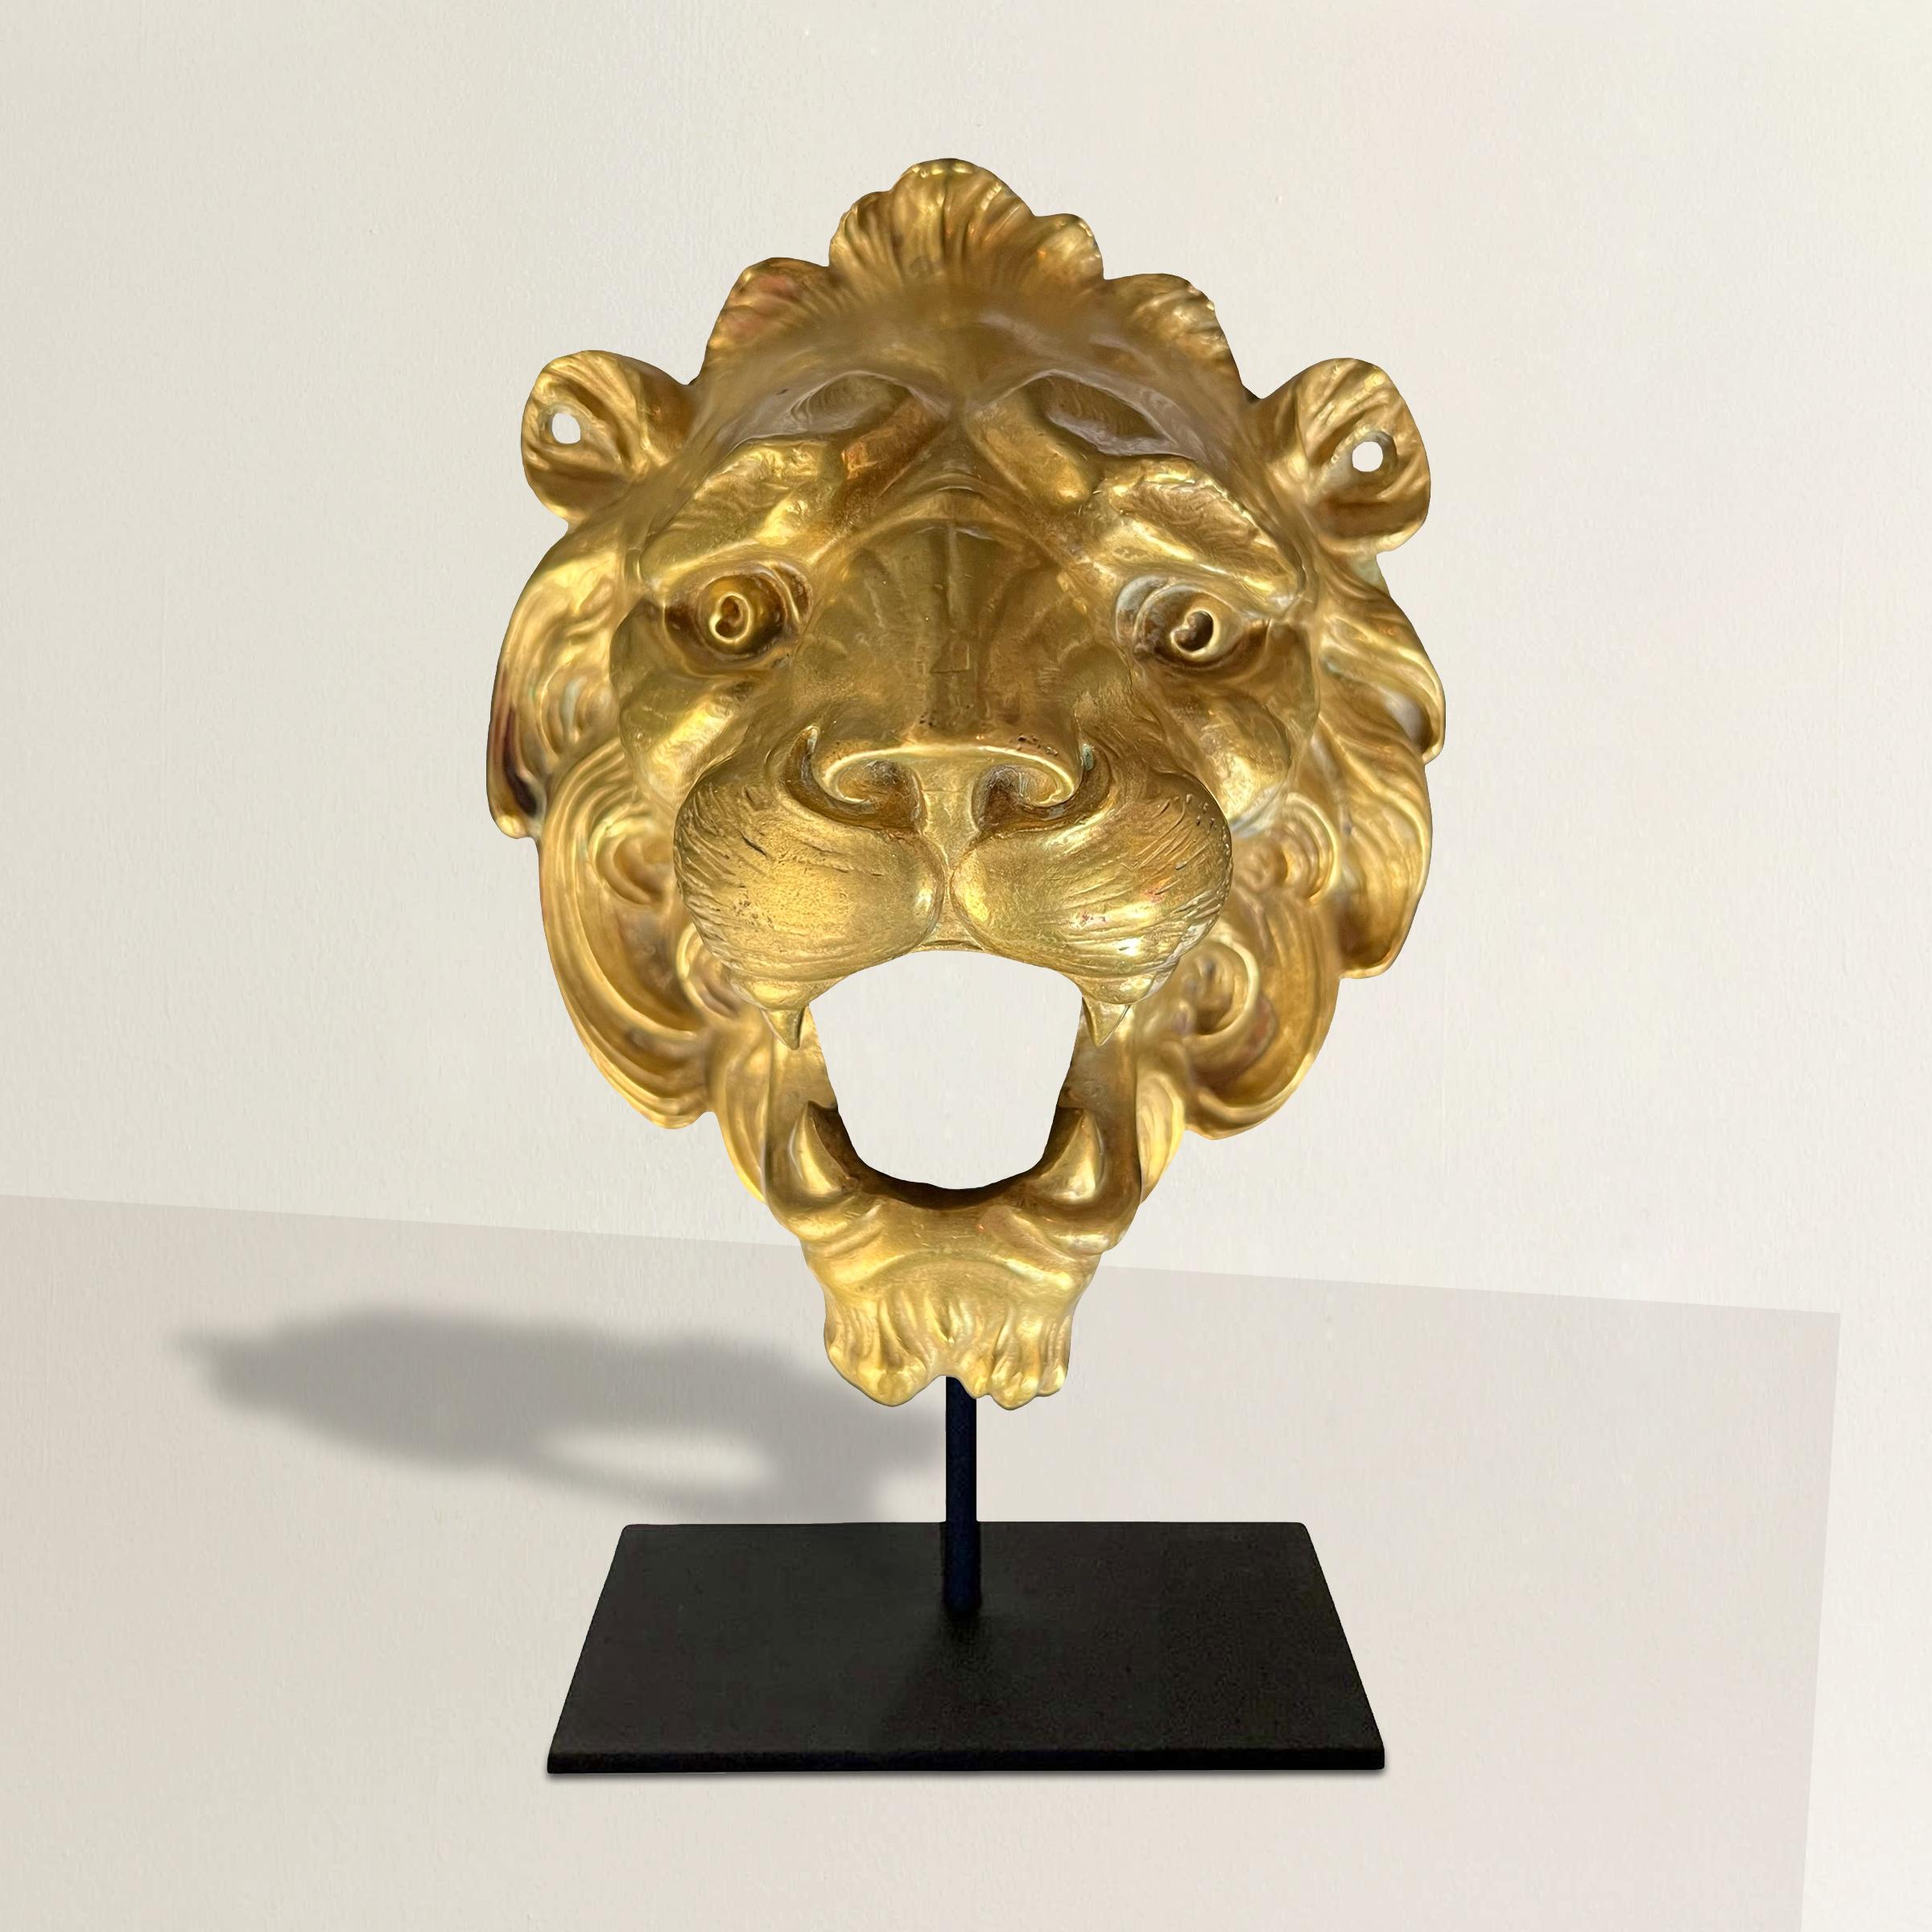 Ce fragment architectural en bronze doré à tête de lion, datant du XIXe siècle, est une relique fascinante d'une époque révolue. Cette pièce captivante représente un lion majestueux à la gueule ouverte, révélant des dents aux détails complexes,